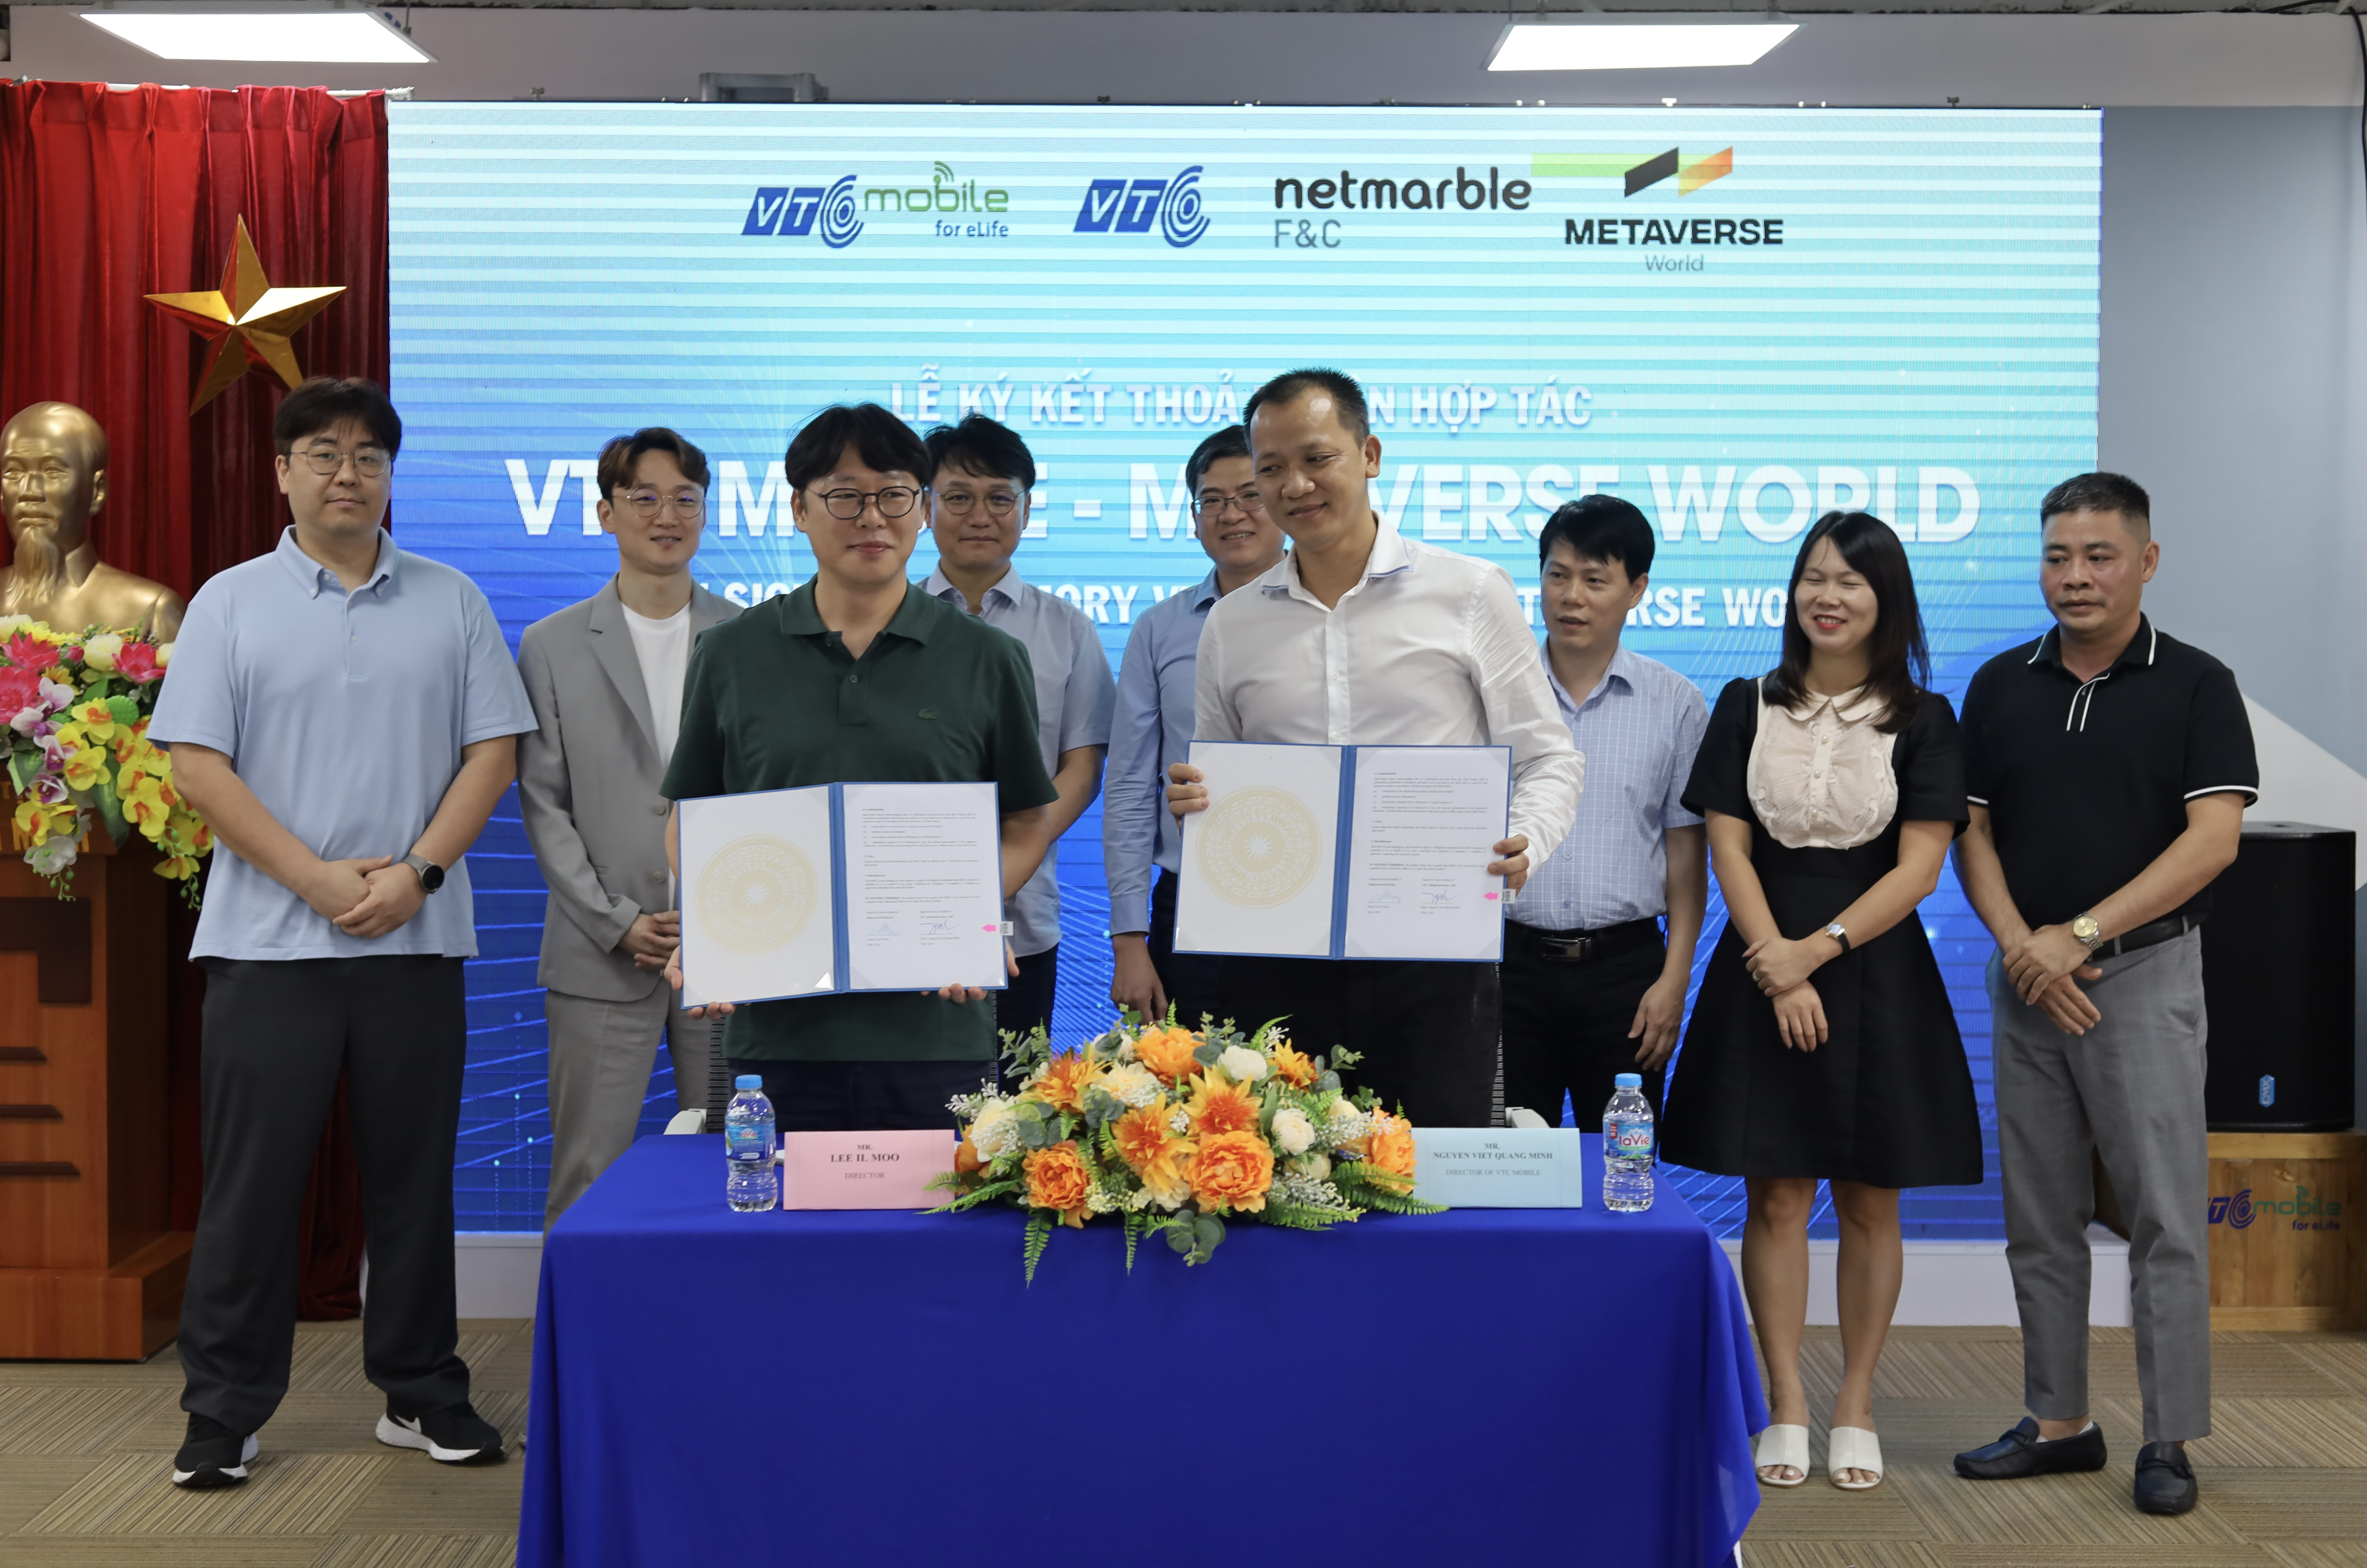 VTC Mobile và Metaverse World thành công ký kết thỏa thuận hợp tác